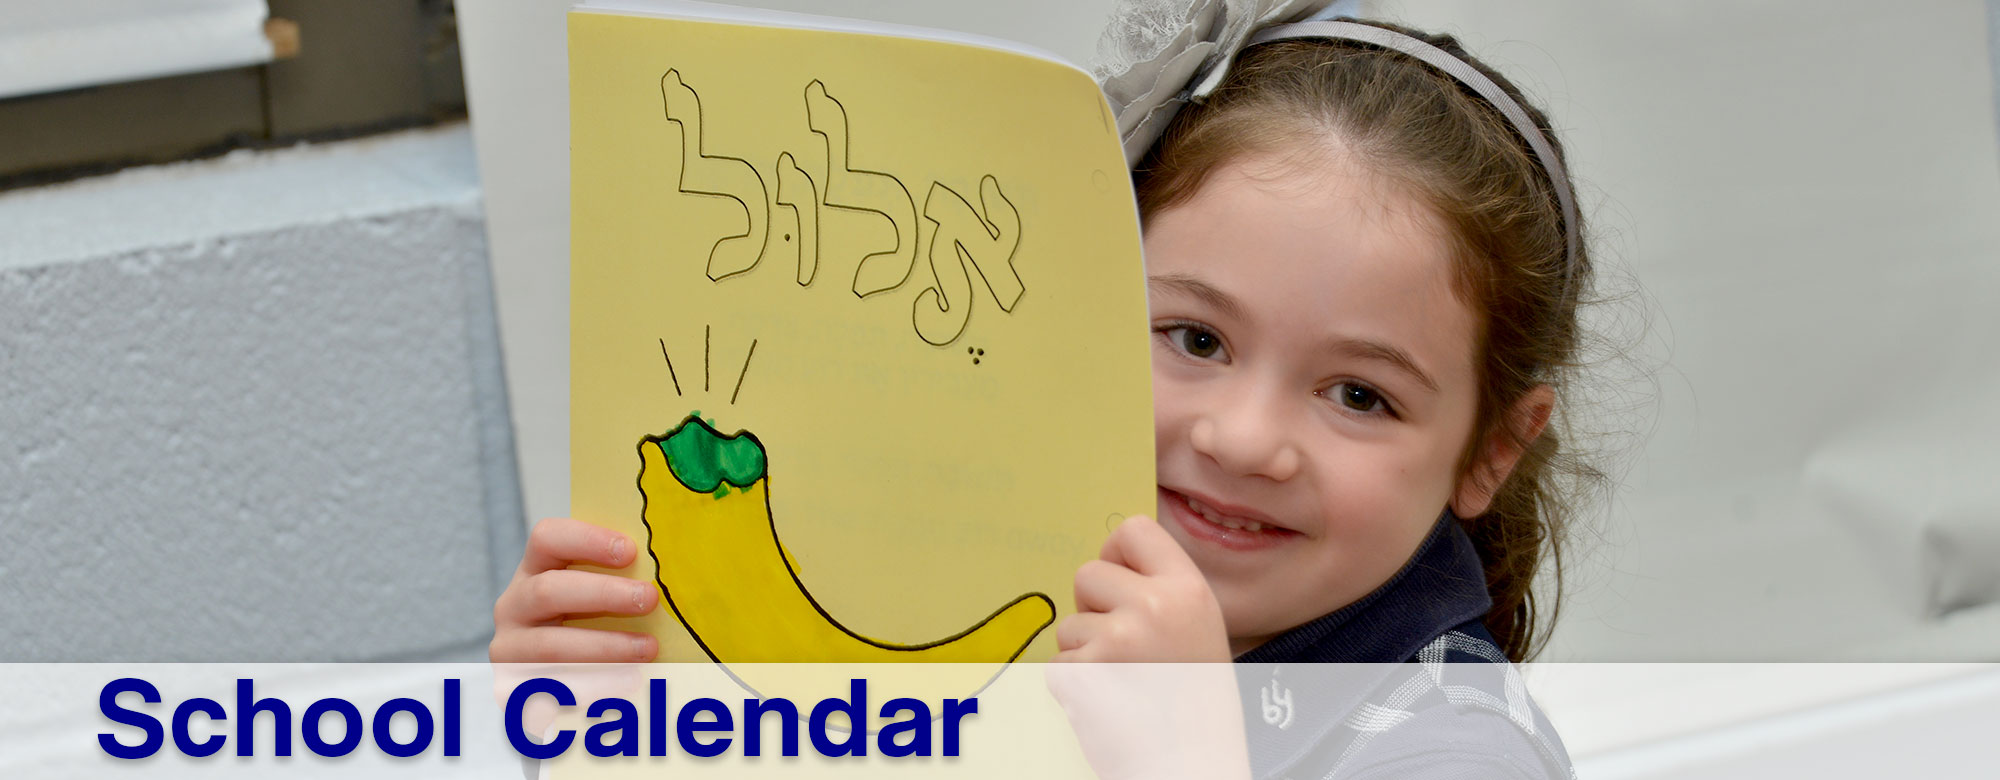 School Calendar Bais Yaakov of Baltimore